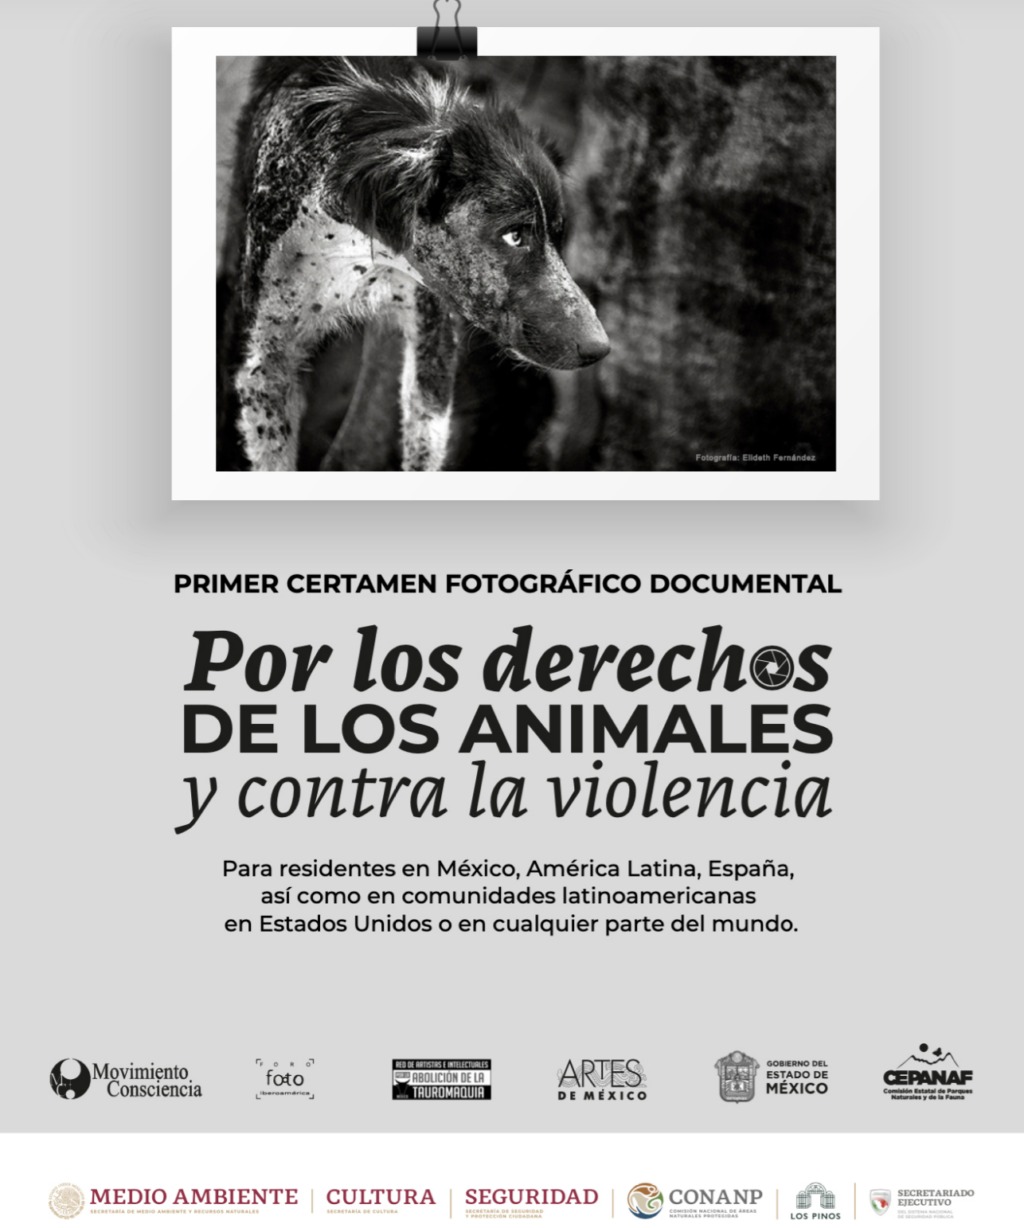 Lanzan certamen de fotografía en favor de los derechos de los animales y contra la violencia